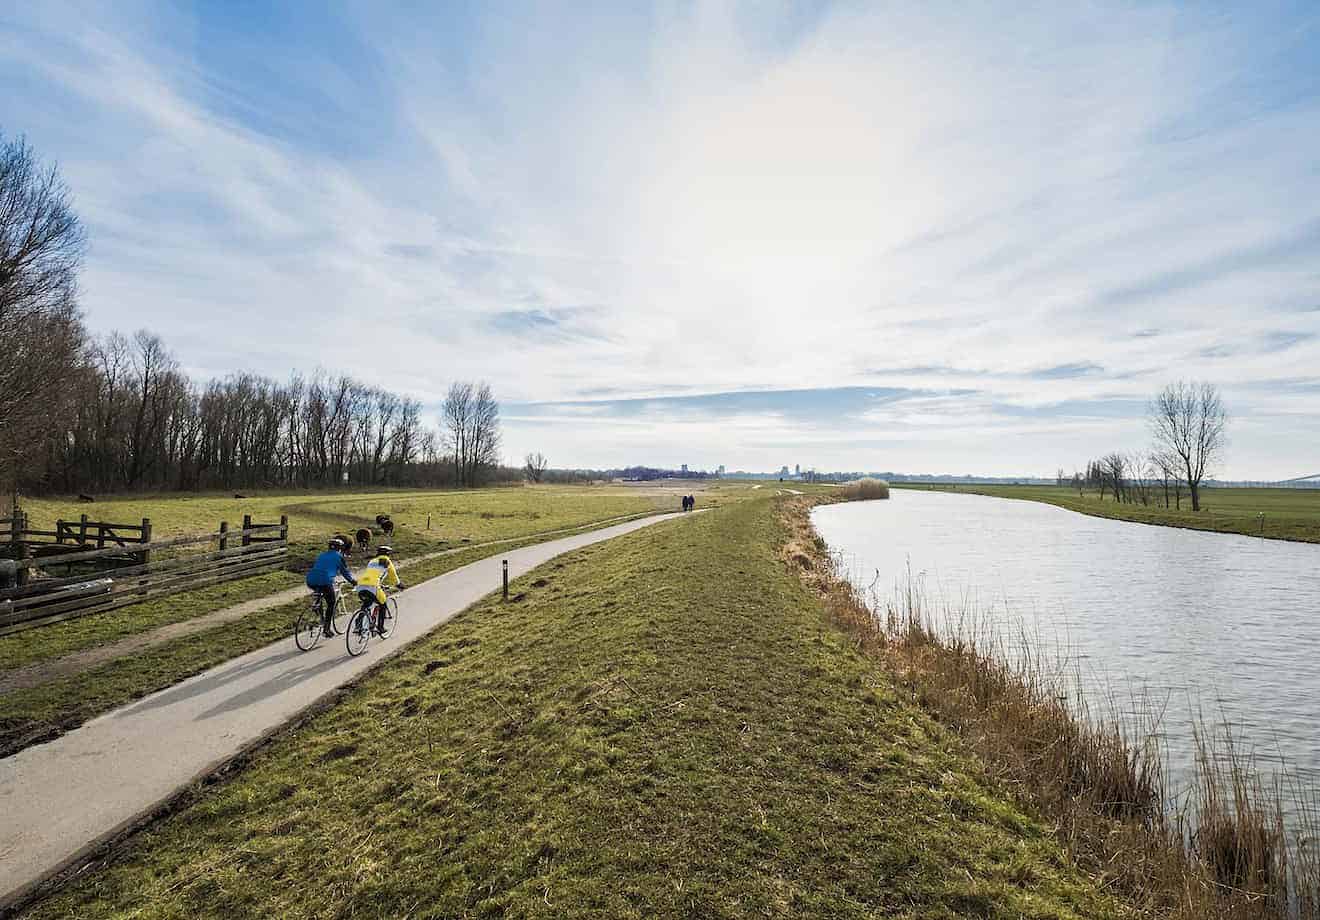 Twee wielrenners fietsen op een weg langs een groene strook gras en een kanaal richting de horizon. De lucht is blauwe met witte wolken.